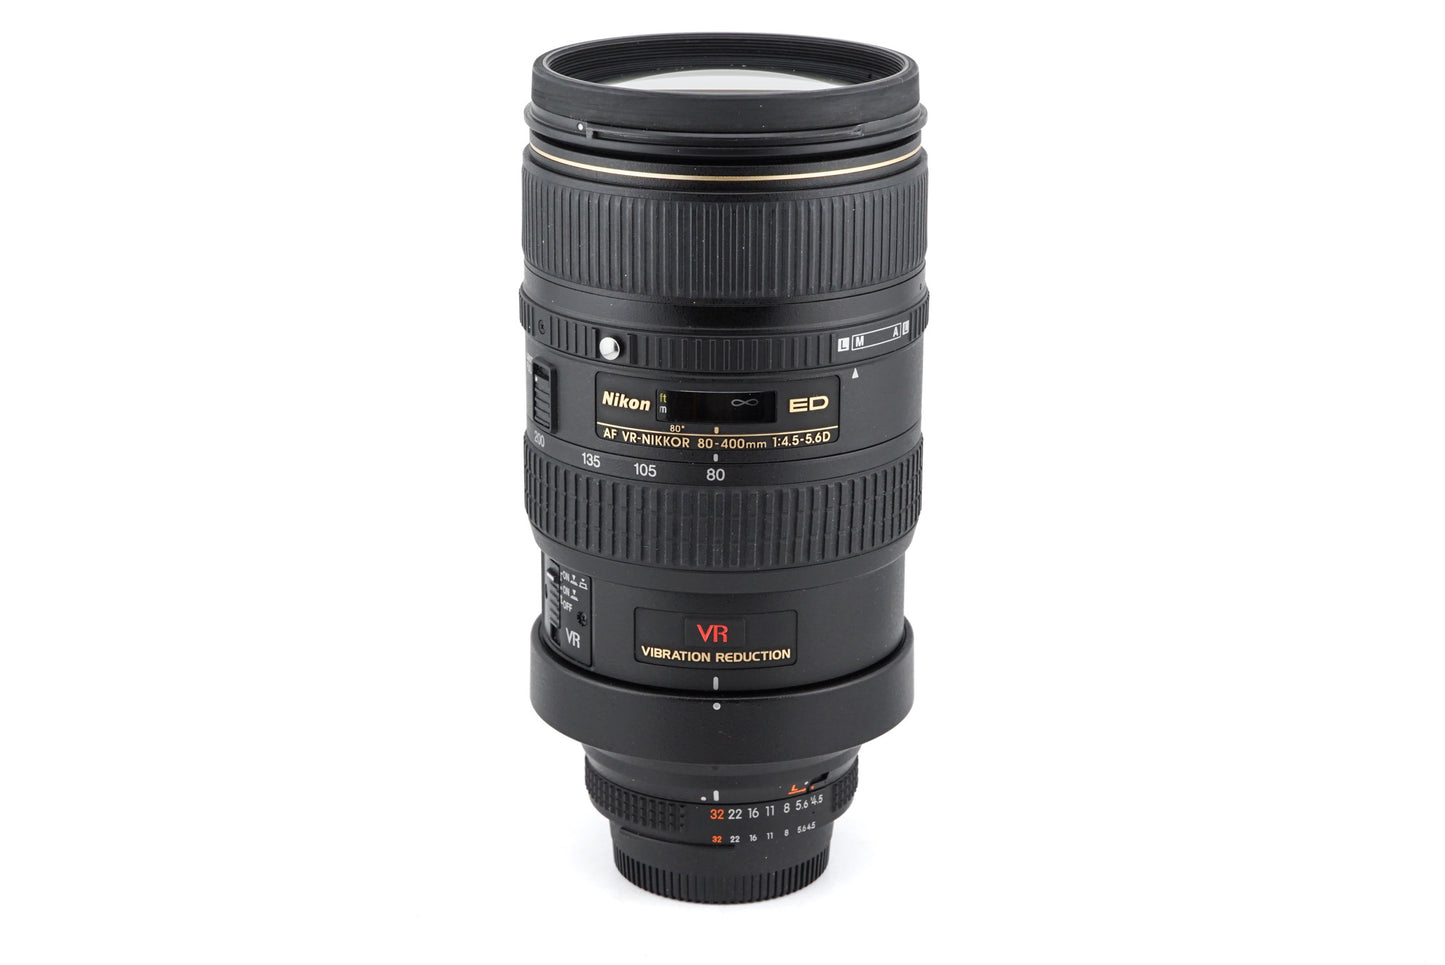 Nikon 80-400mm f4.5-5.6 D ED VR AF Nikkor - Lens